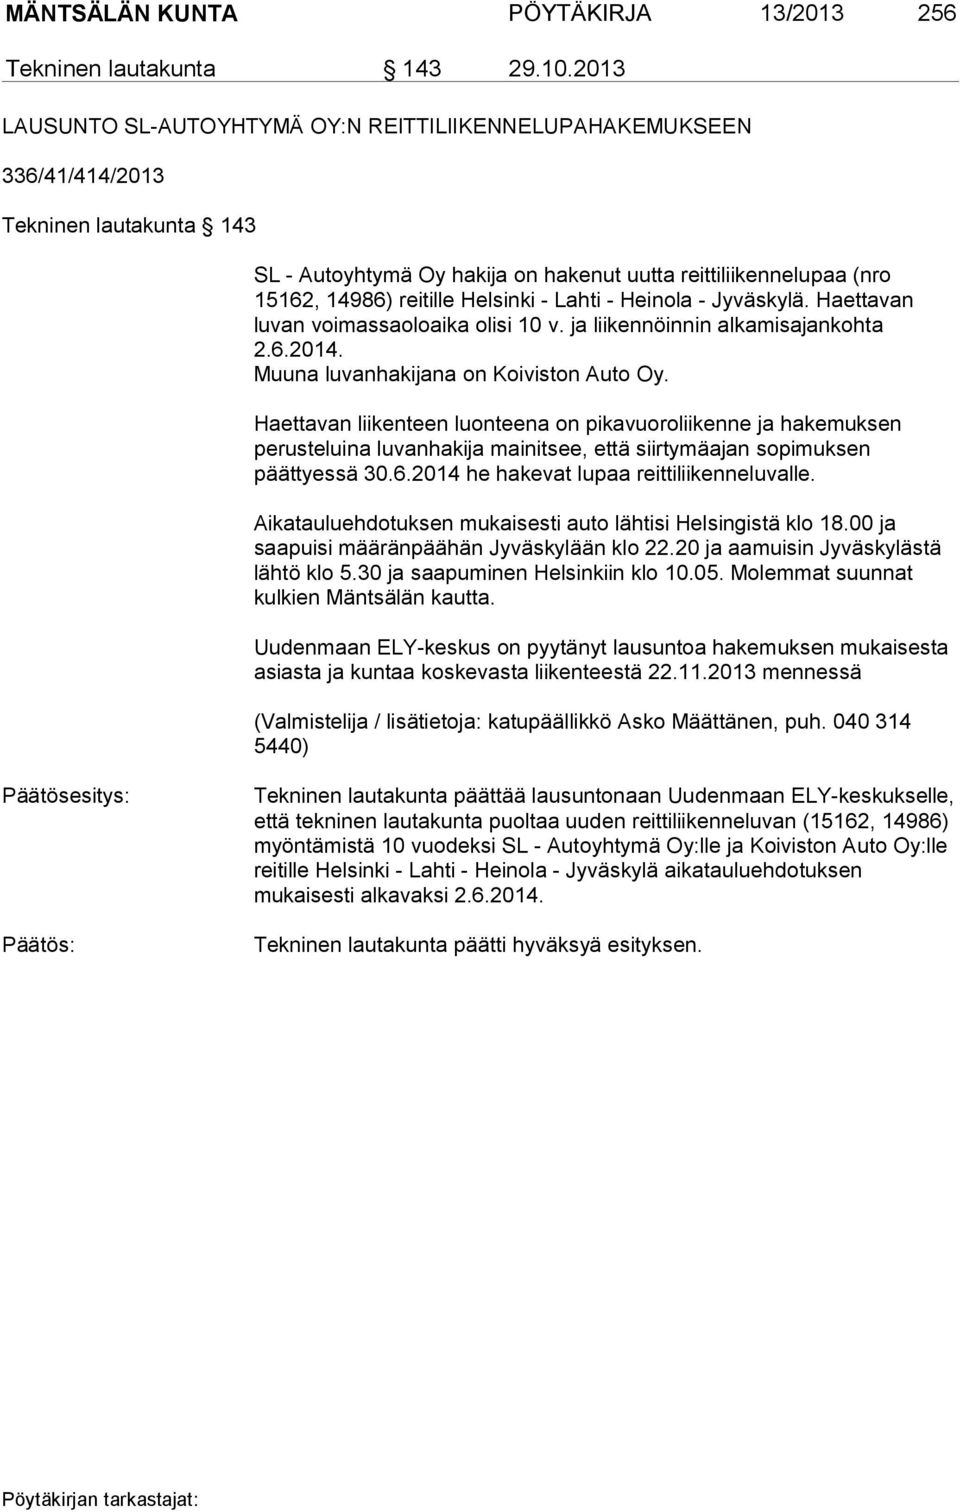 Helsinki - Lahti - Heinola - Jyväskylä. Haettavan luvan voimassaoloaika olisi 10 v. ja liikennöinnin alkamisajankohta 2.6.2014. Muuna luvanhakijana on Koiviston Auto Oy.